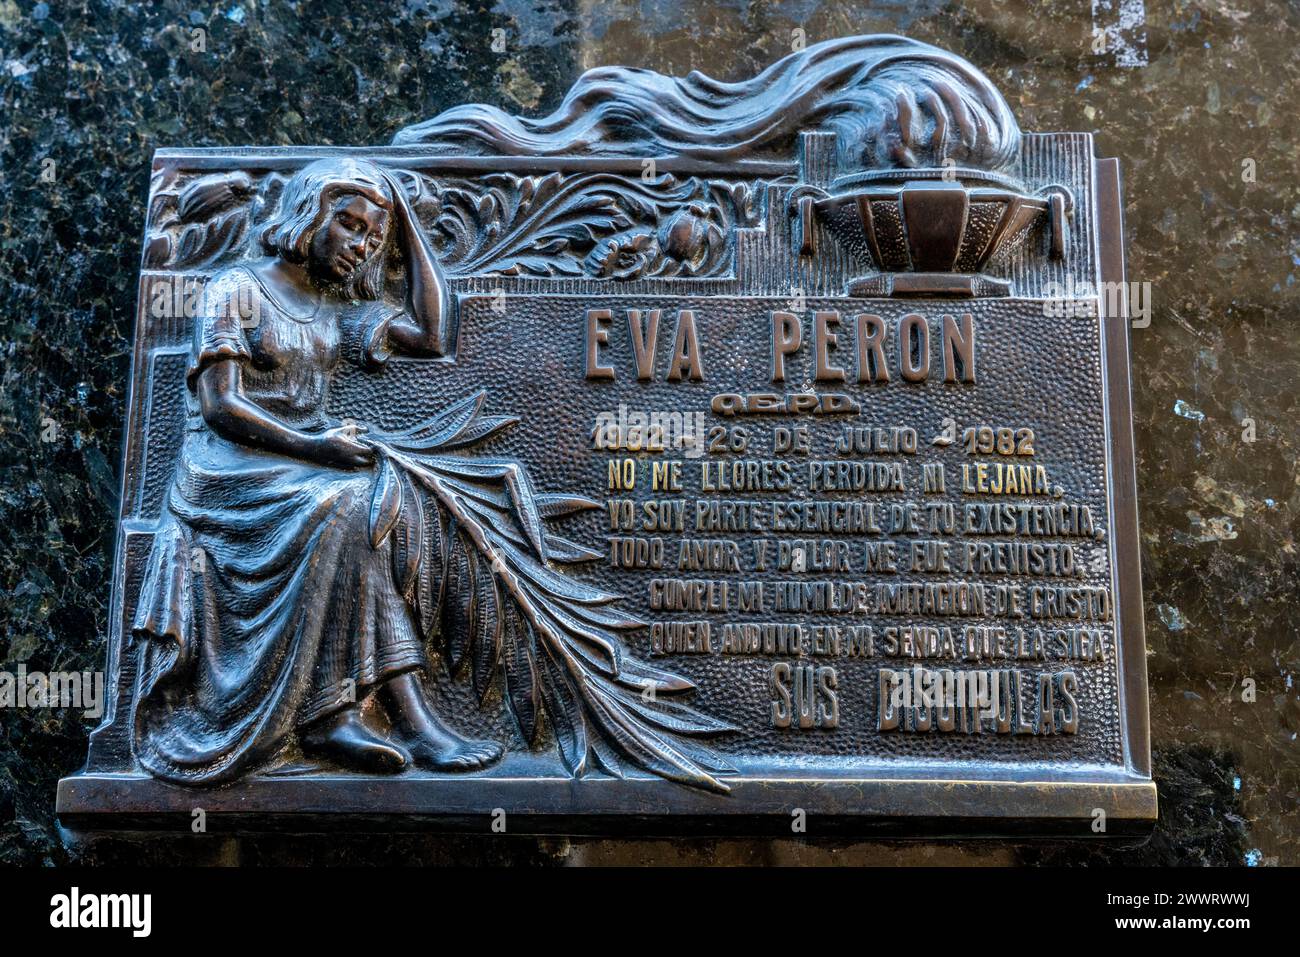 Une plaque sur le tombeau d'Eva Peron (également connu sous le nom d'Evita), le cimetière de Recoleta, Buenos Aires, Argentine. Banque D'Images